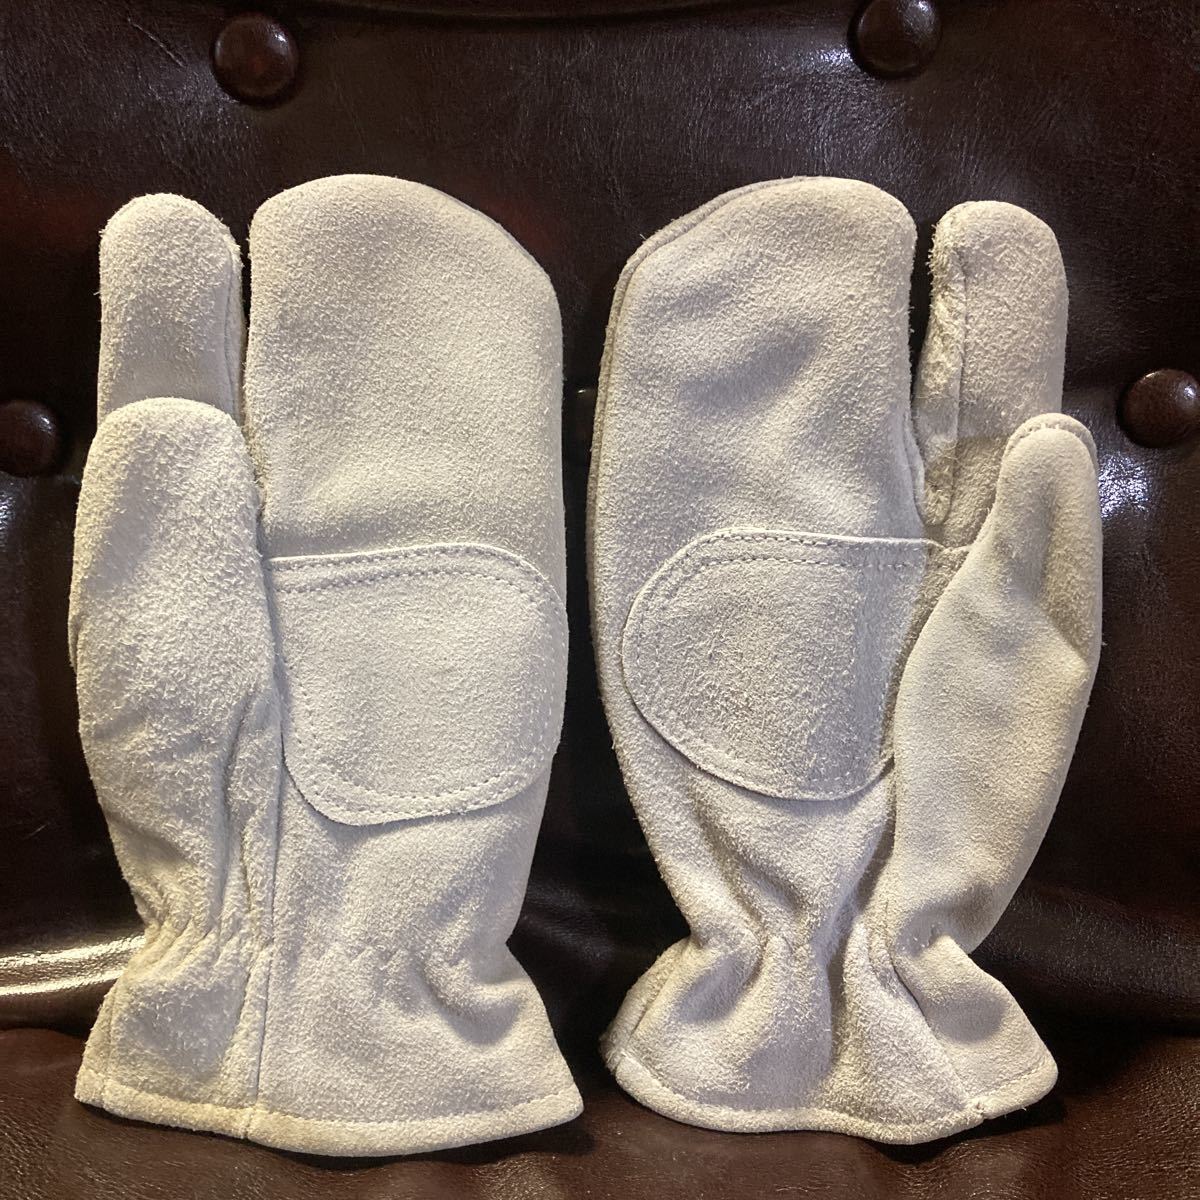 革手袋 3本指 耐熱手袋 変色あり 未使用 溶接用グローブ ミトン 溶接用牛床手袋 皮手袋_画像2